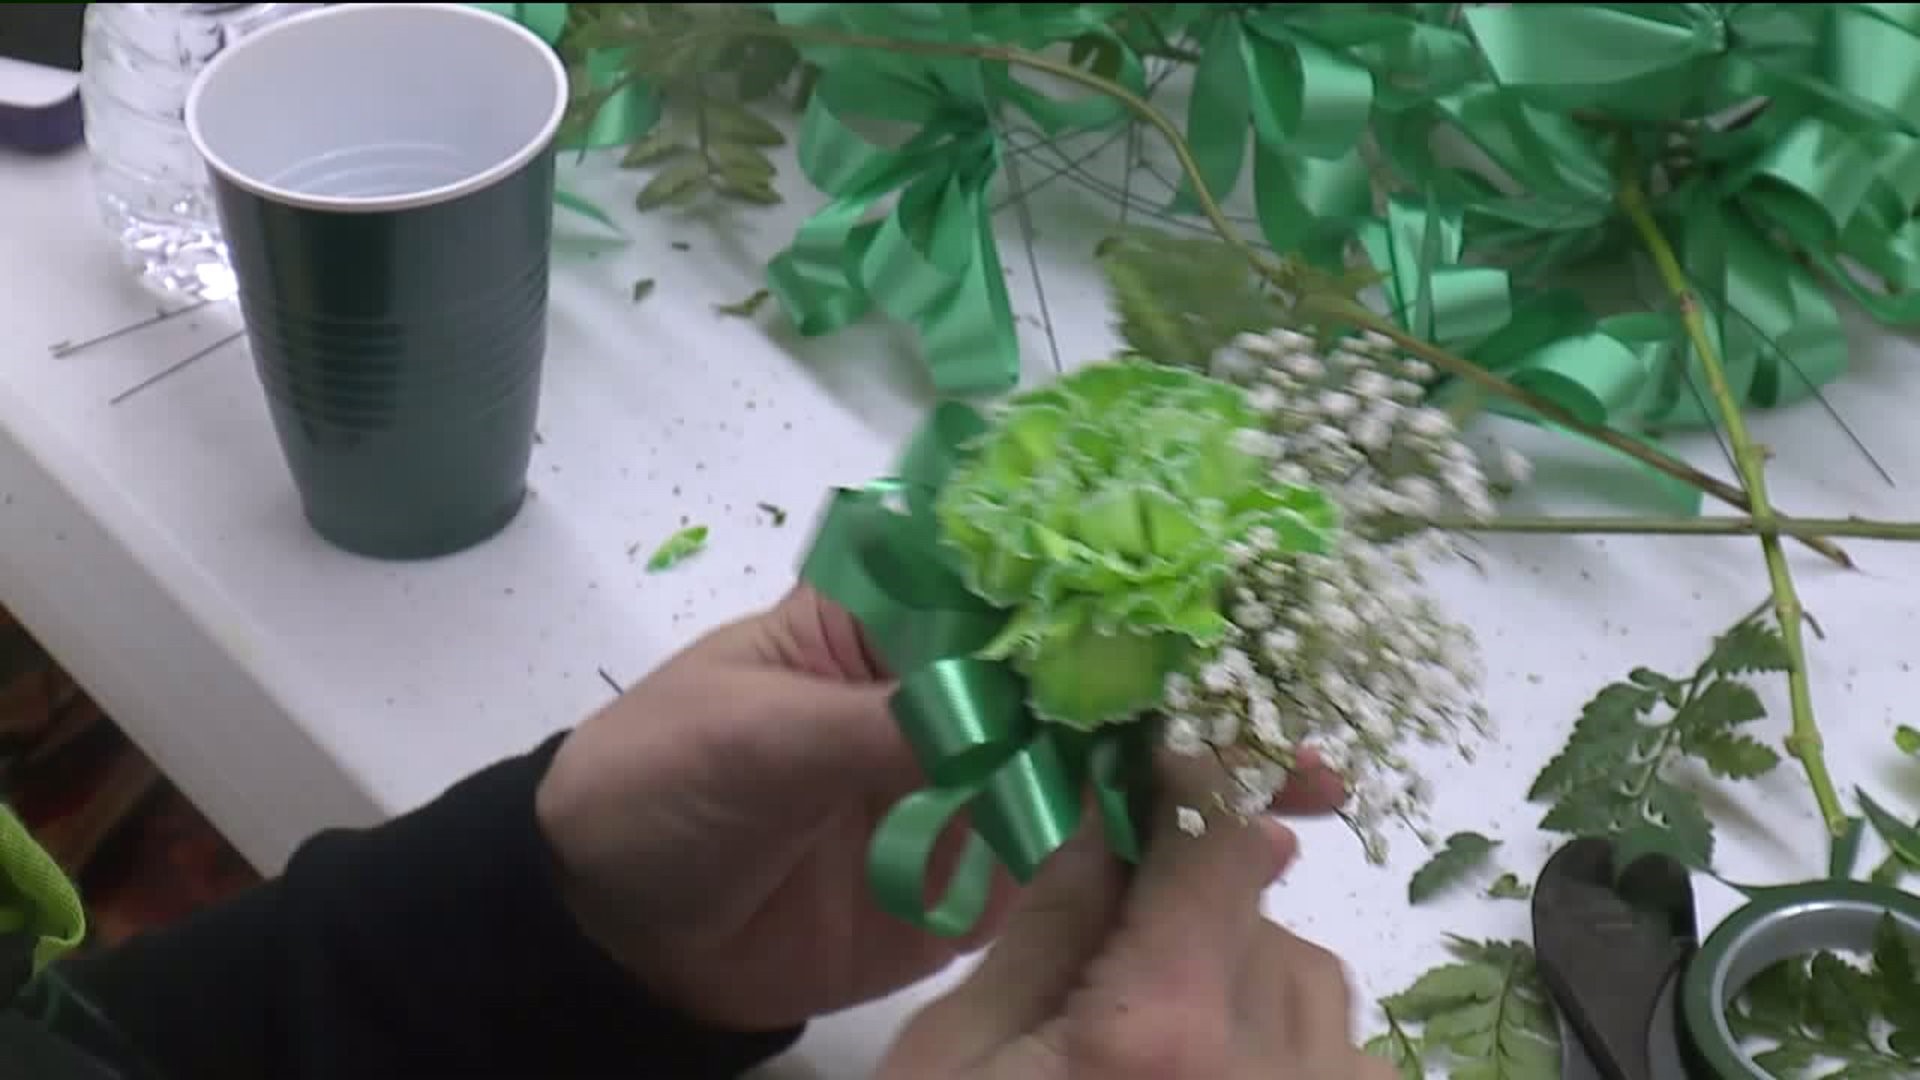 Shamrock Heart Foundation Makes Green Carnations for Senior Citizens